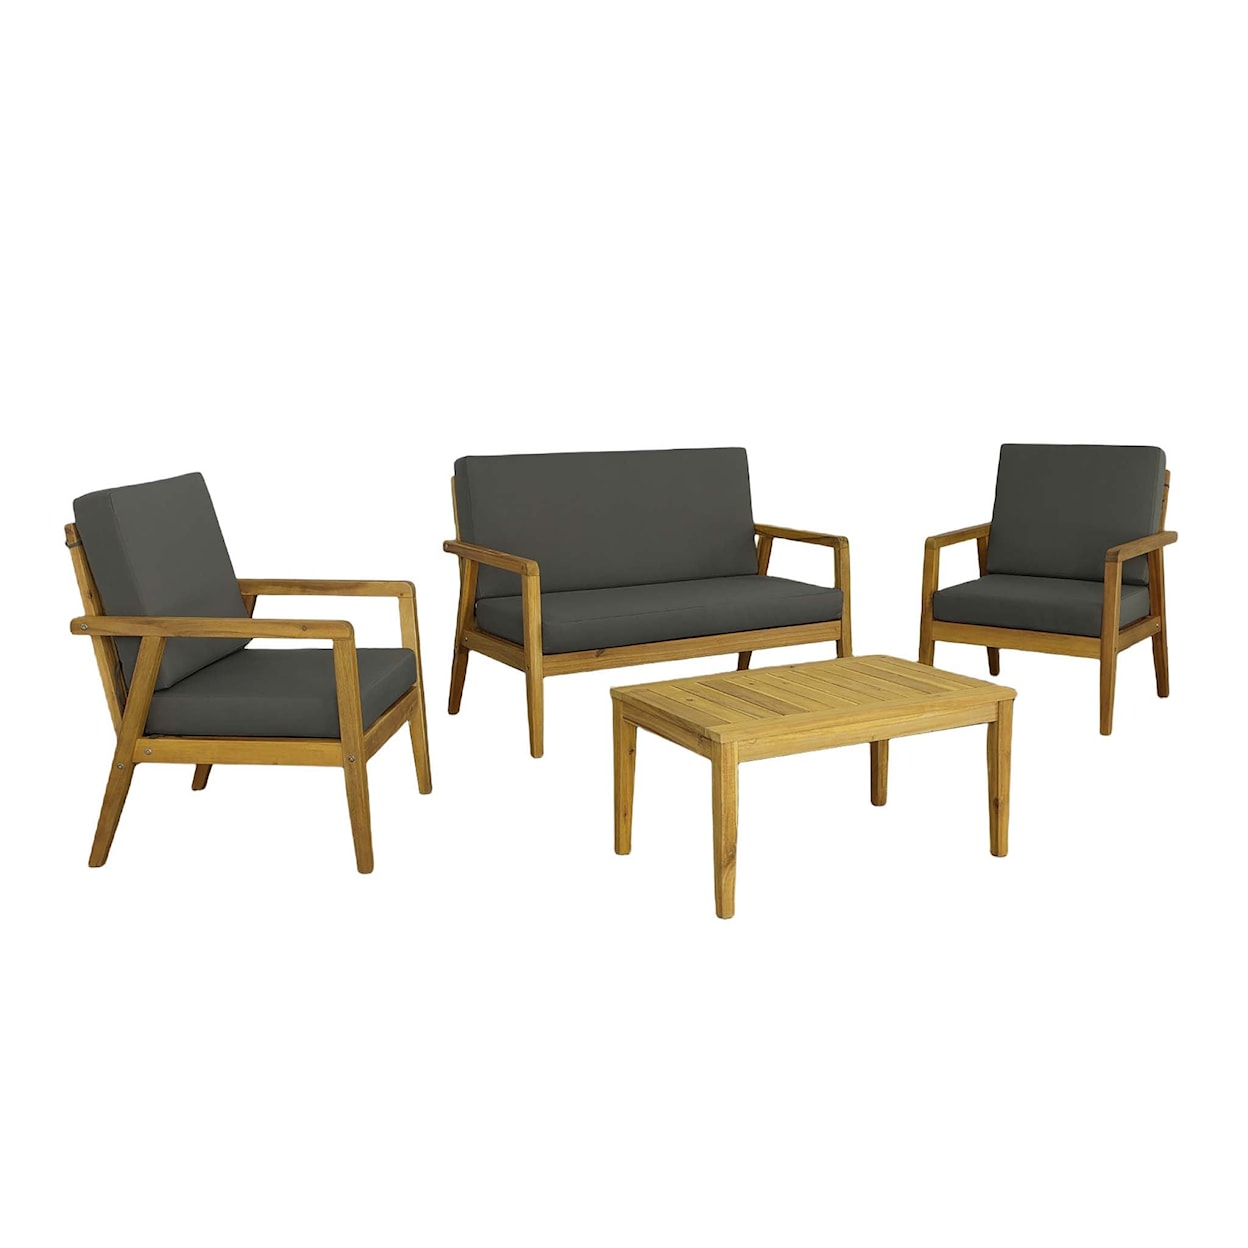 Progressive Furniture Cape Cod II Outdoor Chair